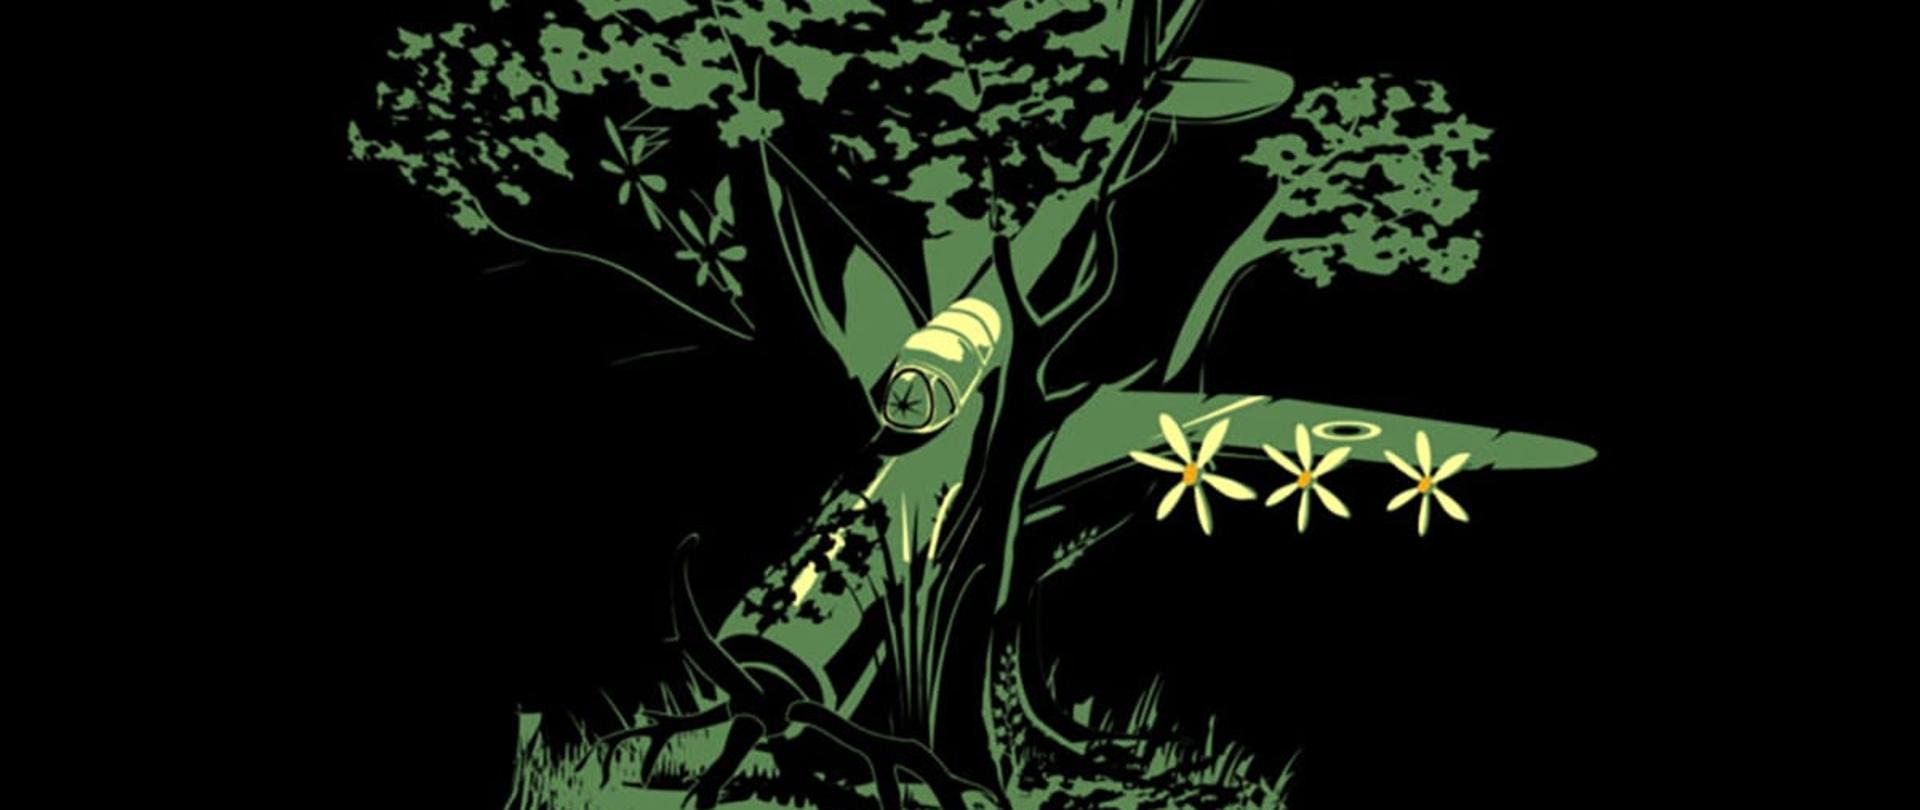 Grafika przedstawiająca samolot w drzewie; obiekty przedstawione głównie jednym kolorem (zieleń) na ciemnym tle.